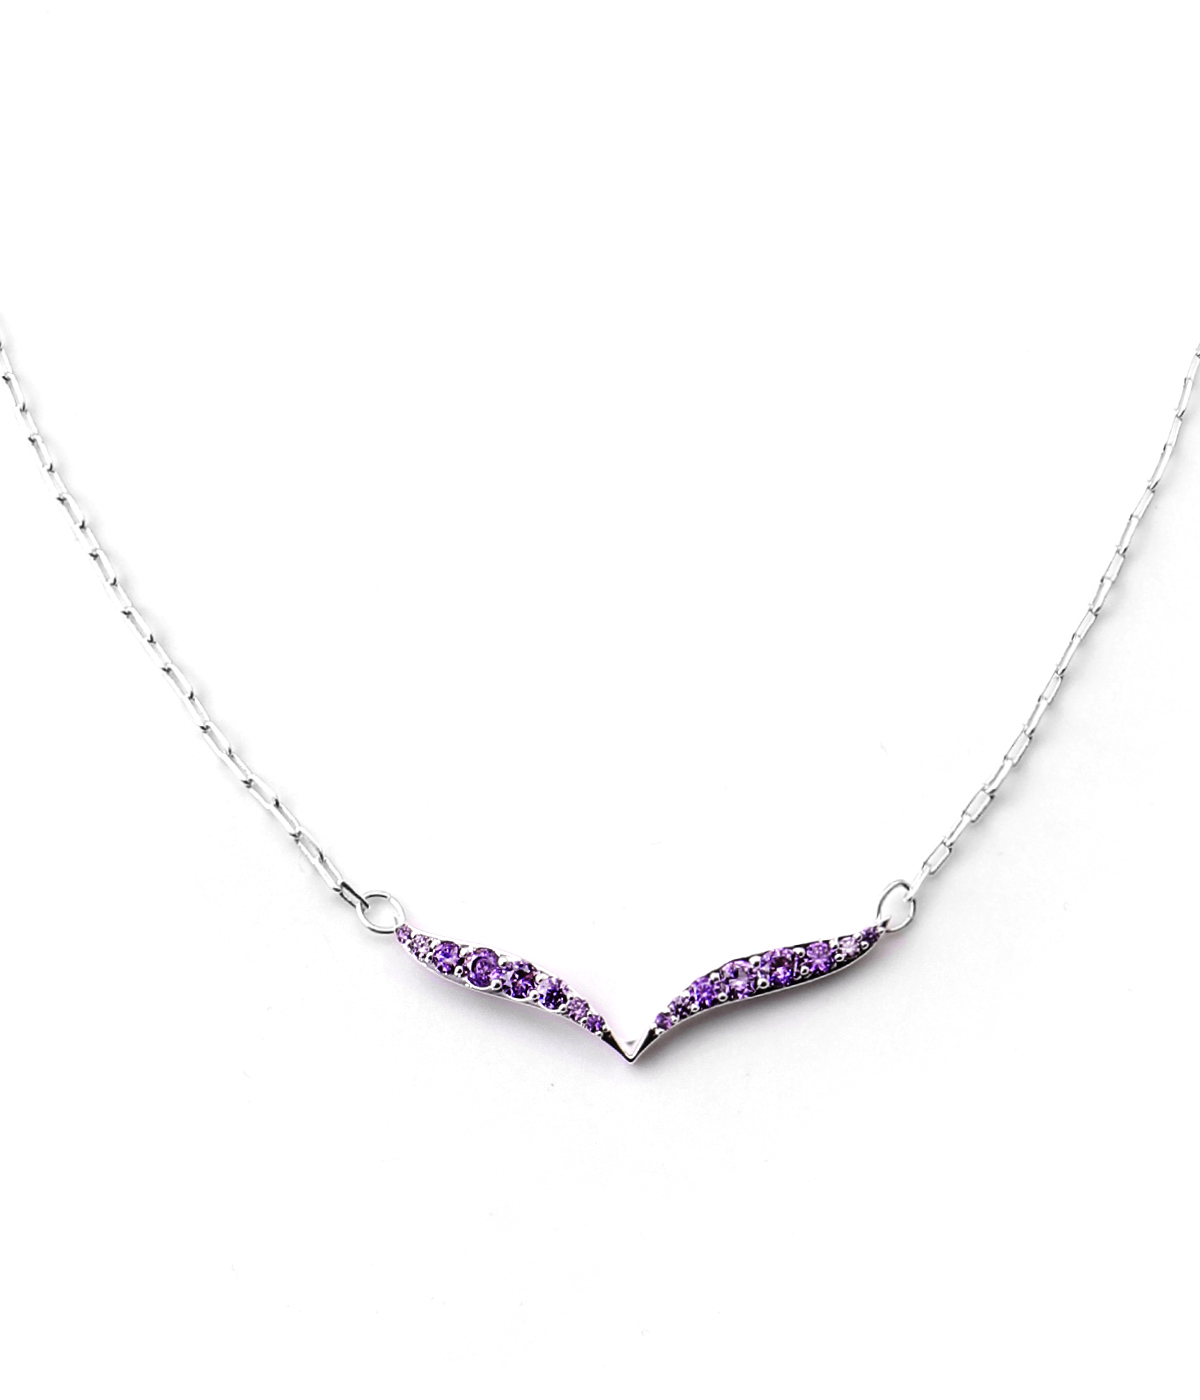 Violet & White Touch -latest NECKLACE,Pendant Necklaces design 2021